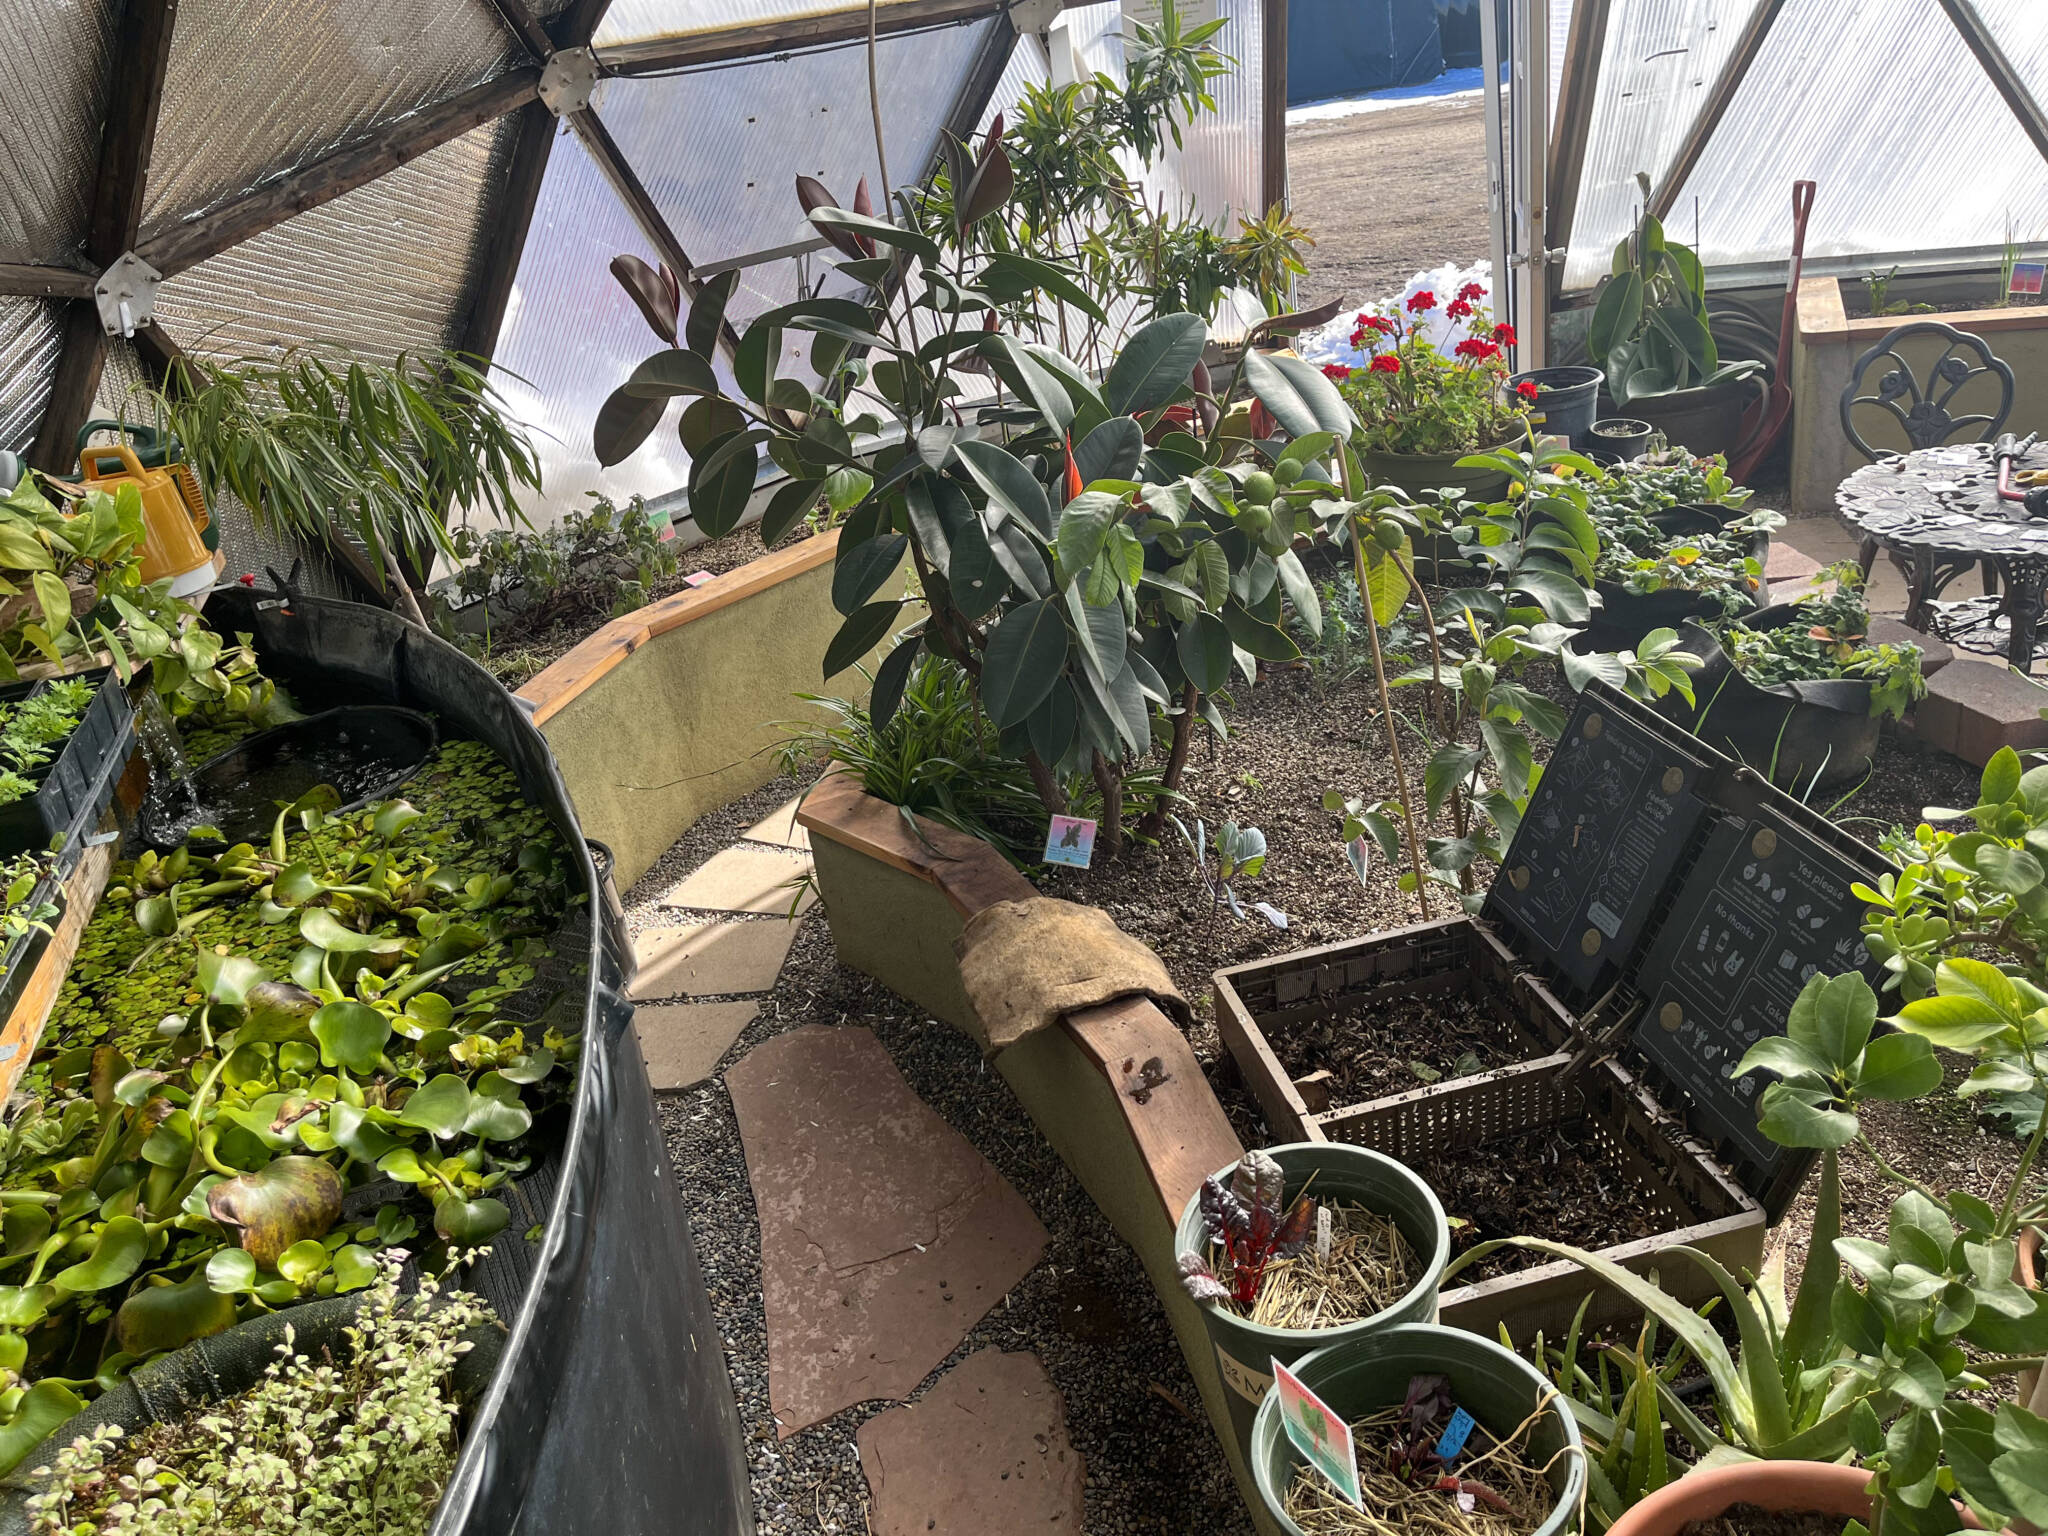 Vermiculture in a greenhouse